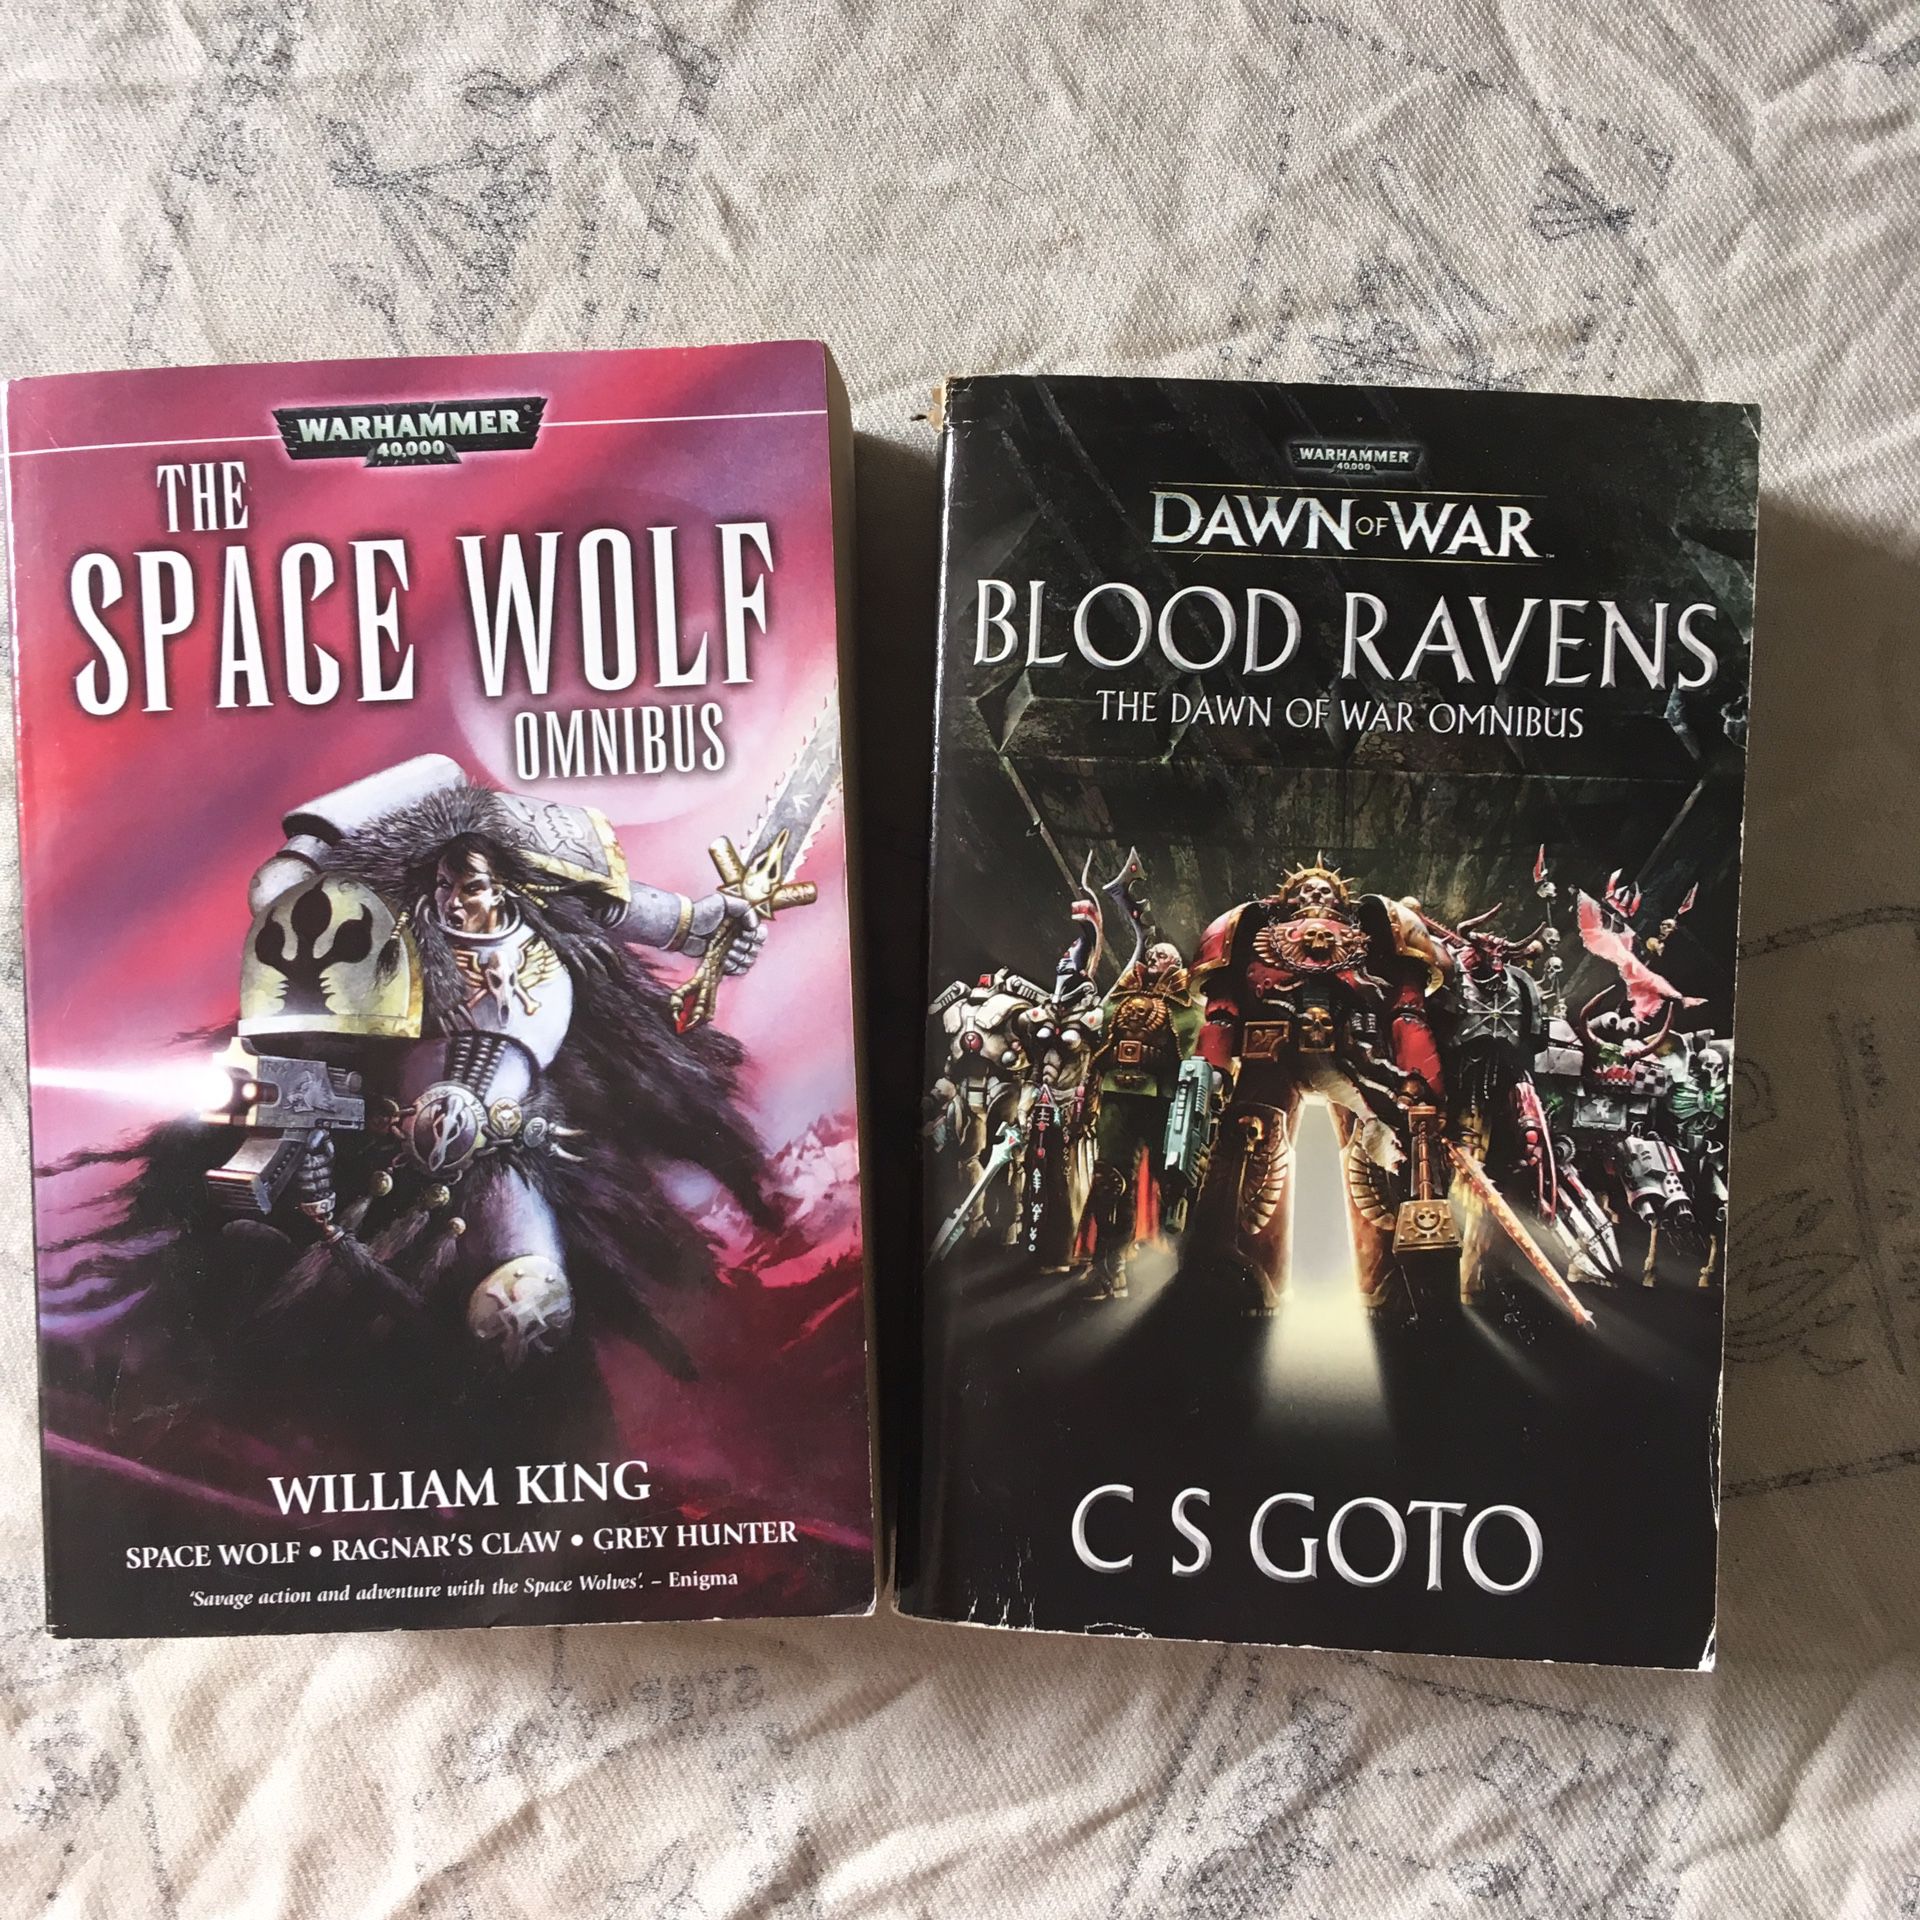 Fantasy & sci fi books